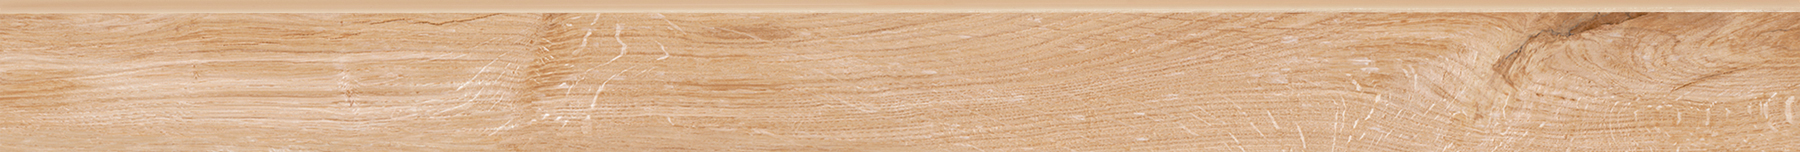 plintus-briccole-wood-beige-skirting image 1